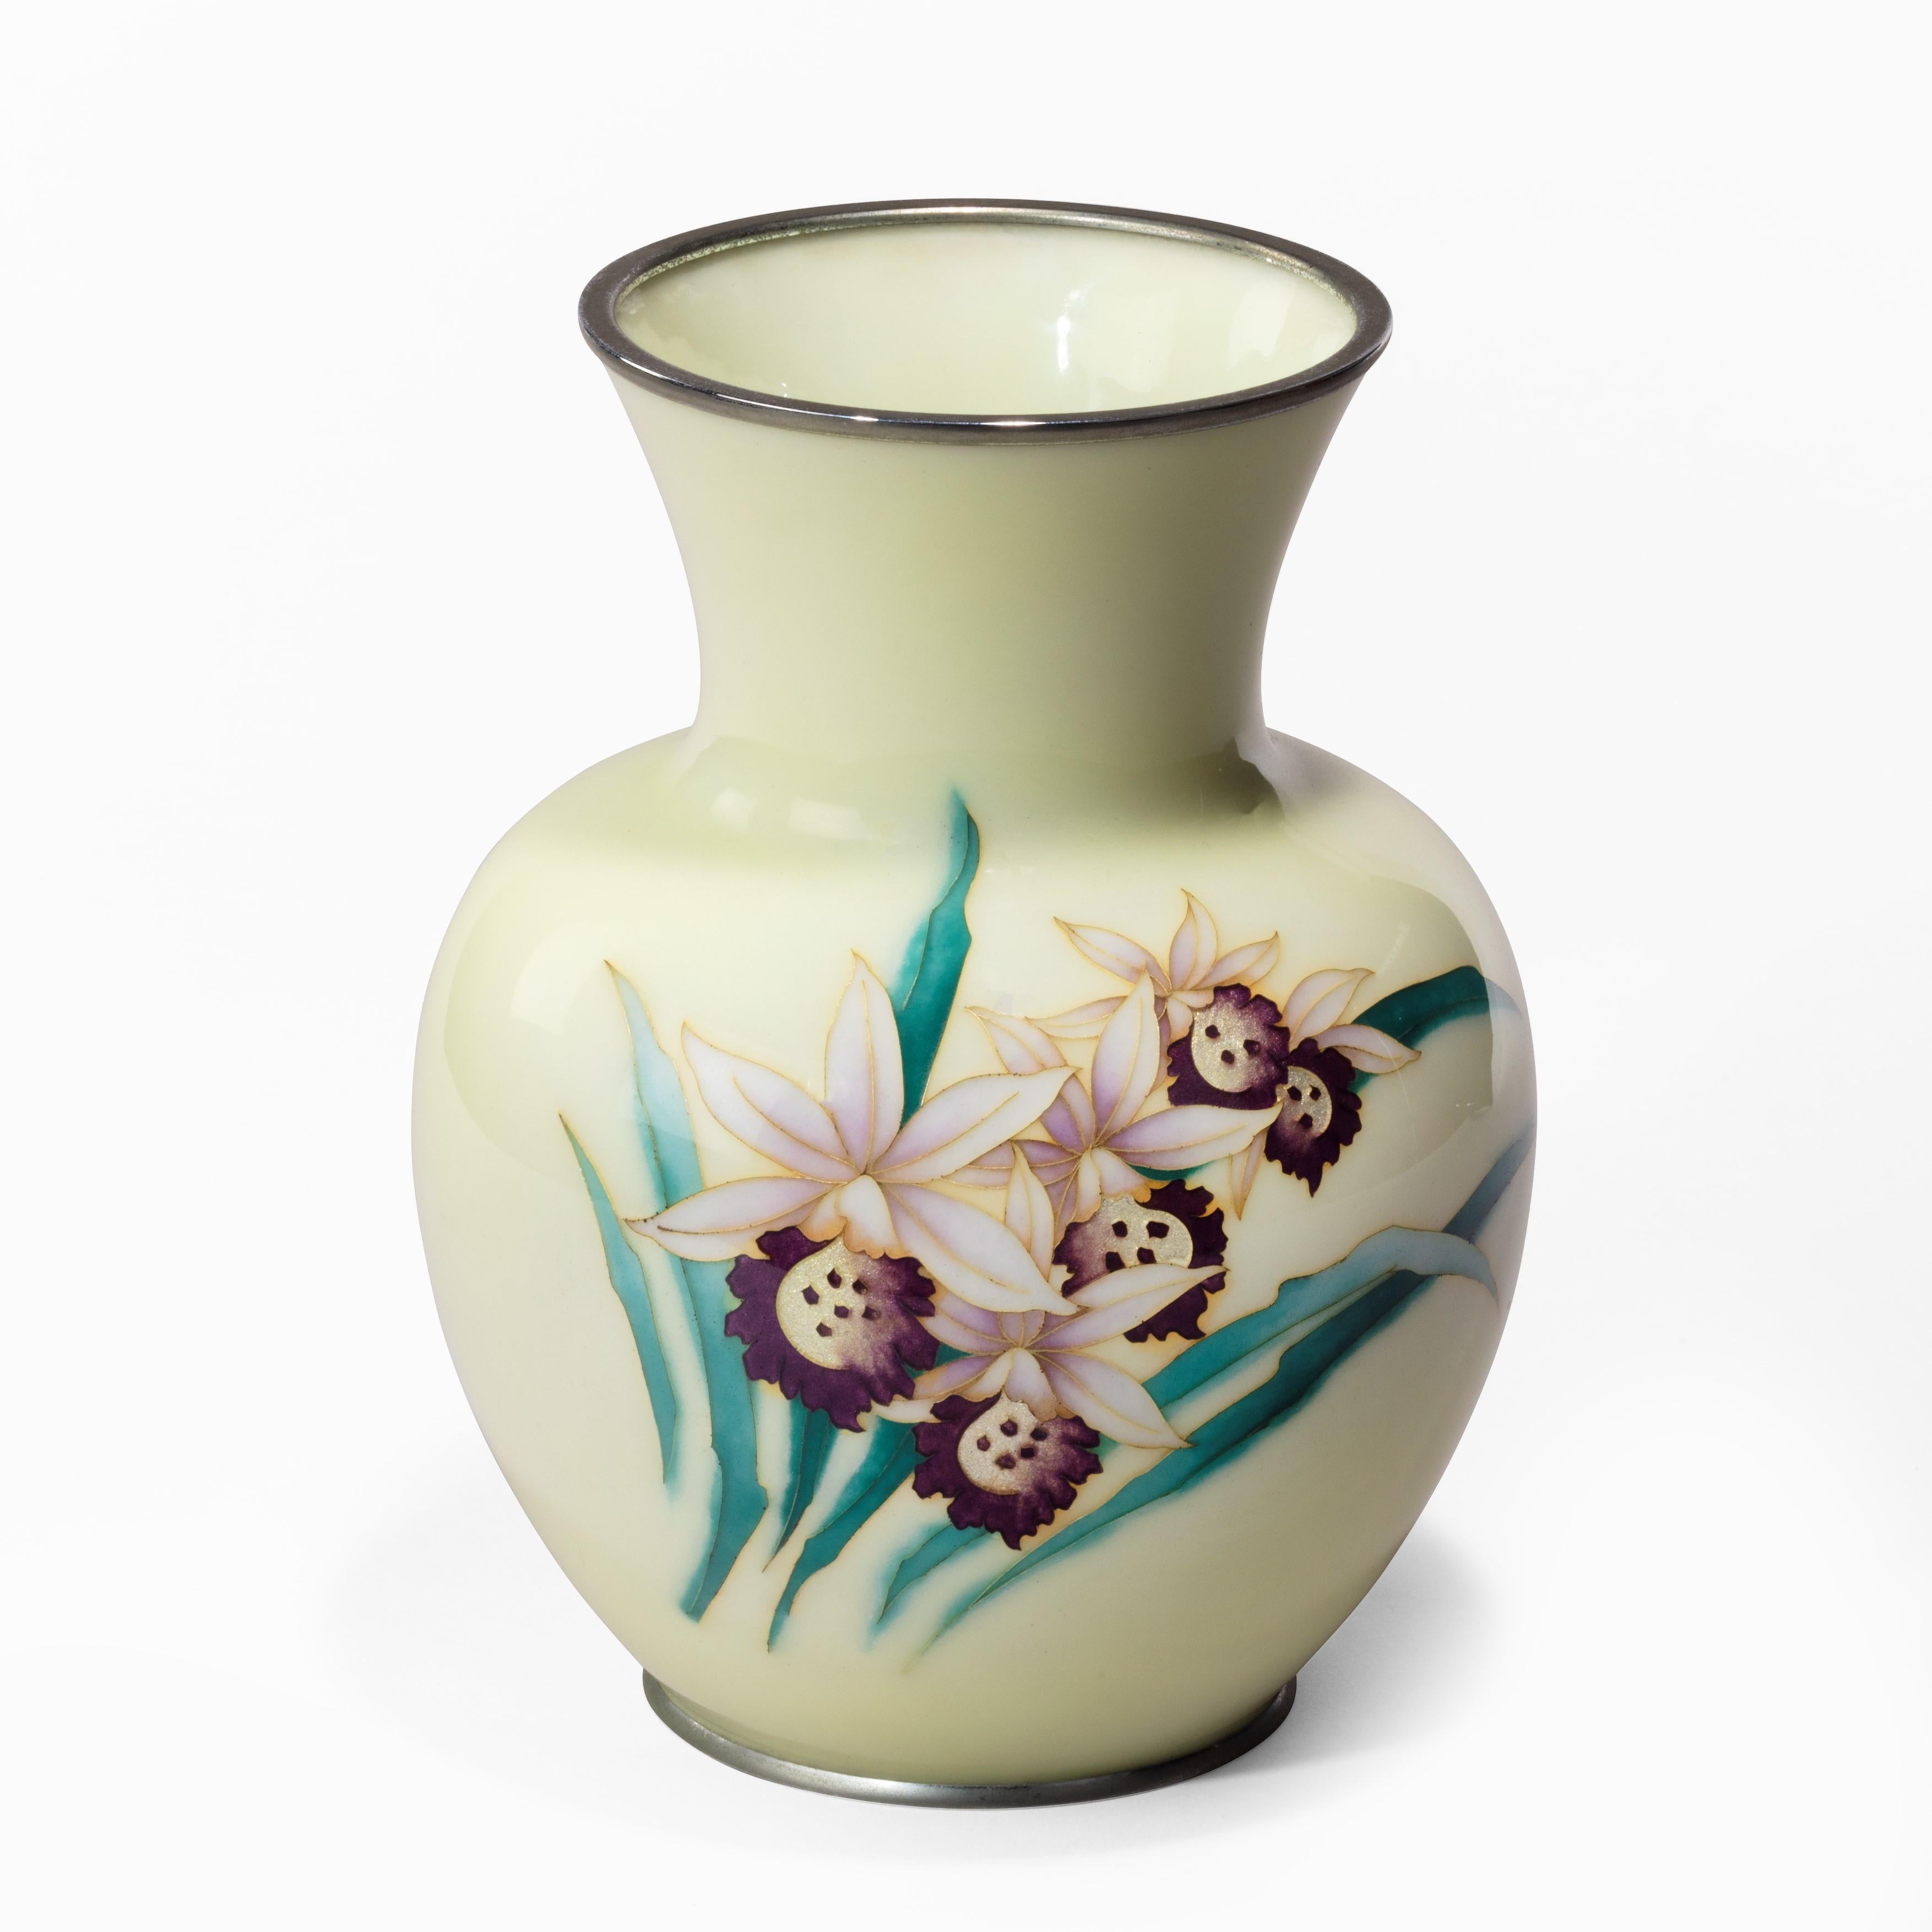 Hellgelbe Cloisonné-Vase von Tamura aus der Showa-Periode, dekoriert mit einer einzelnen Girlande aus fünf violetten und weißen Orchideen mit Gin-Bari-Zentren aus Silberfolie und eingelegten Silberdrähten, auf der Fassung gestempelt 'Tamura', Japan,